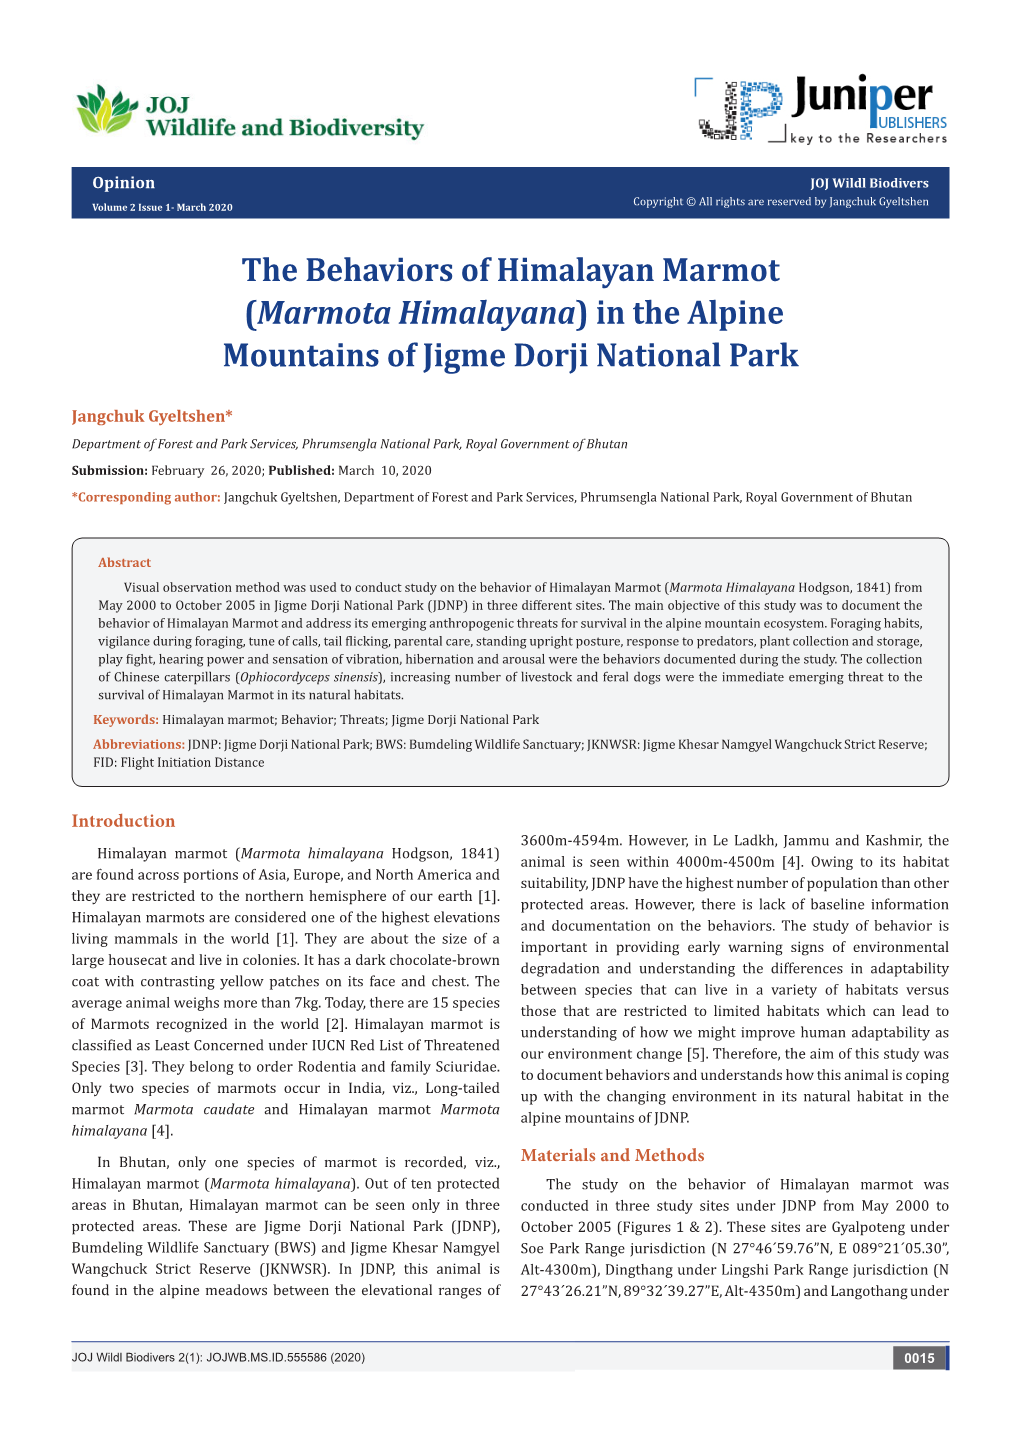 The Behaviors of Himalayan Marmot(Marmota Himalayana) in the Alpine Mountains of Jigme Dorji National Park